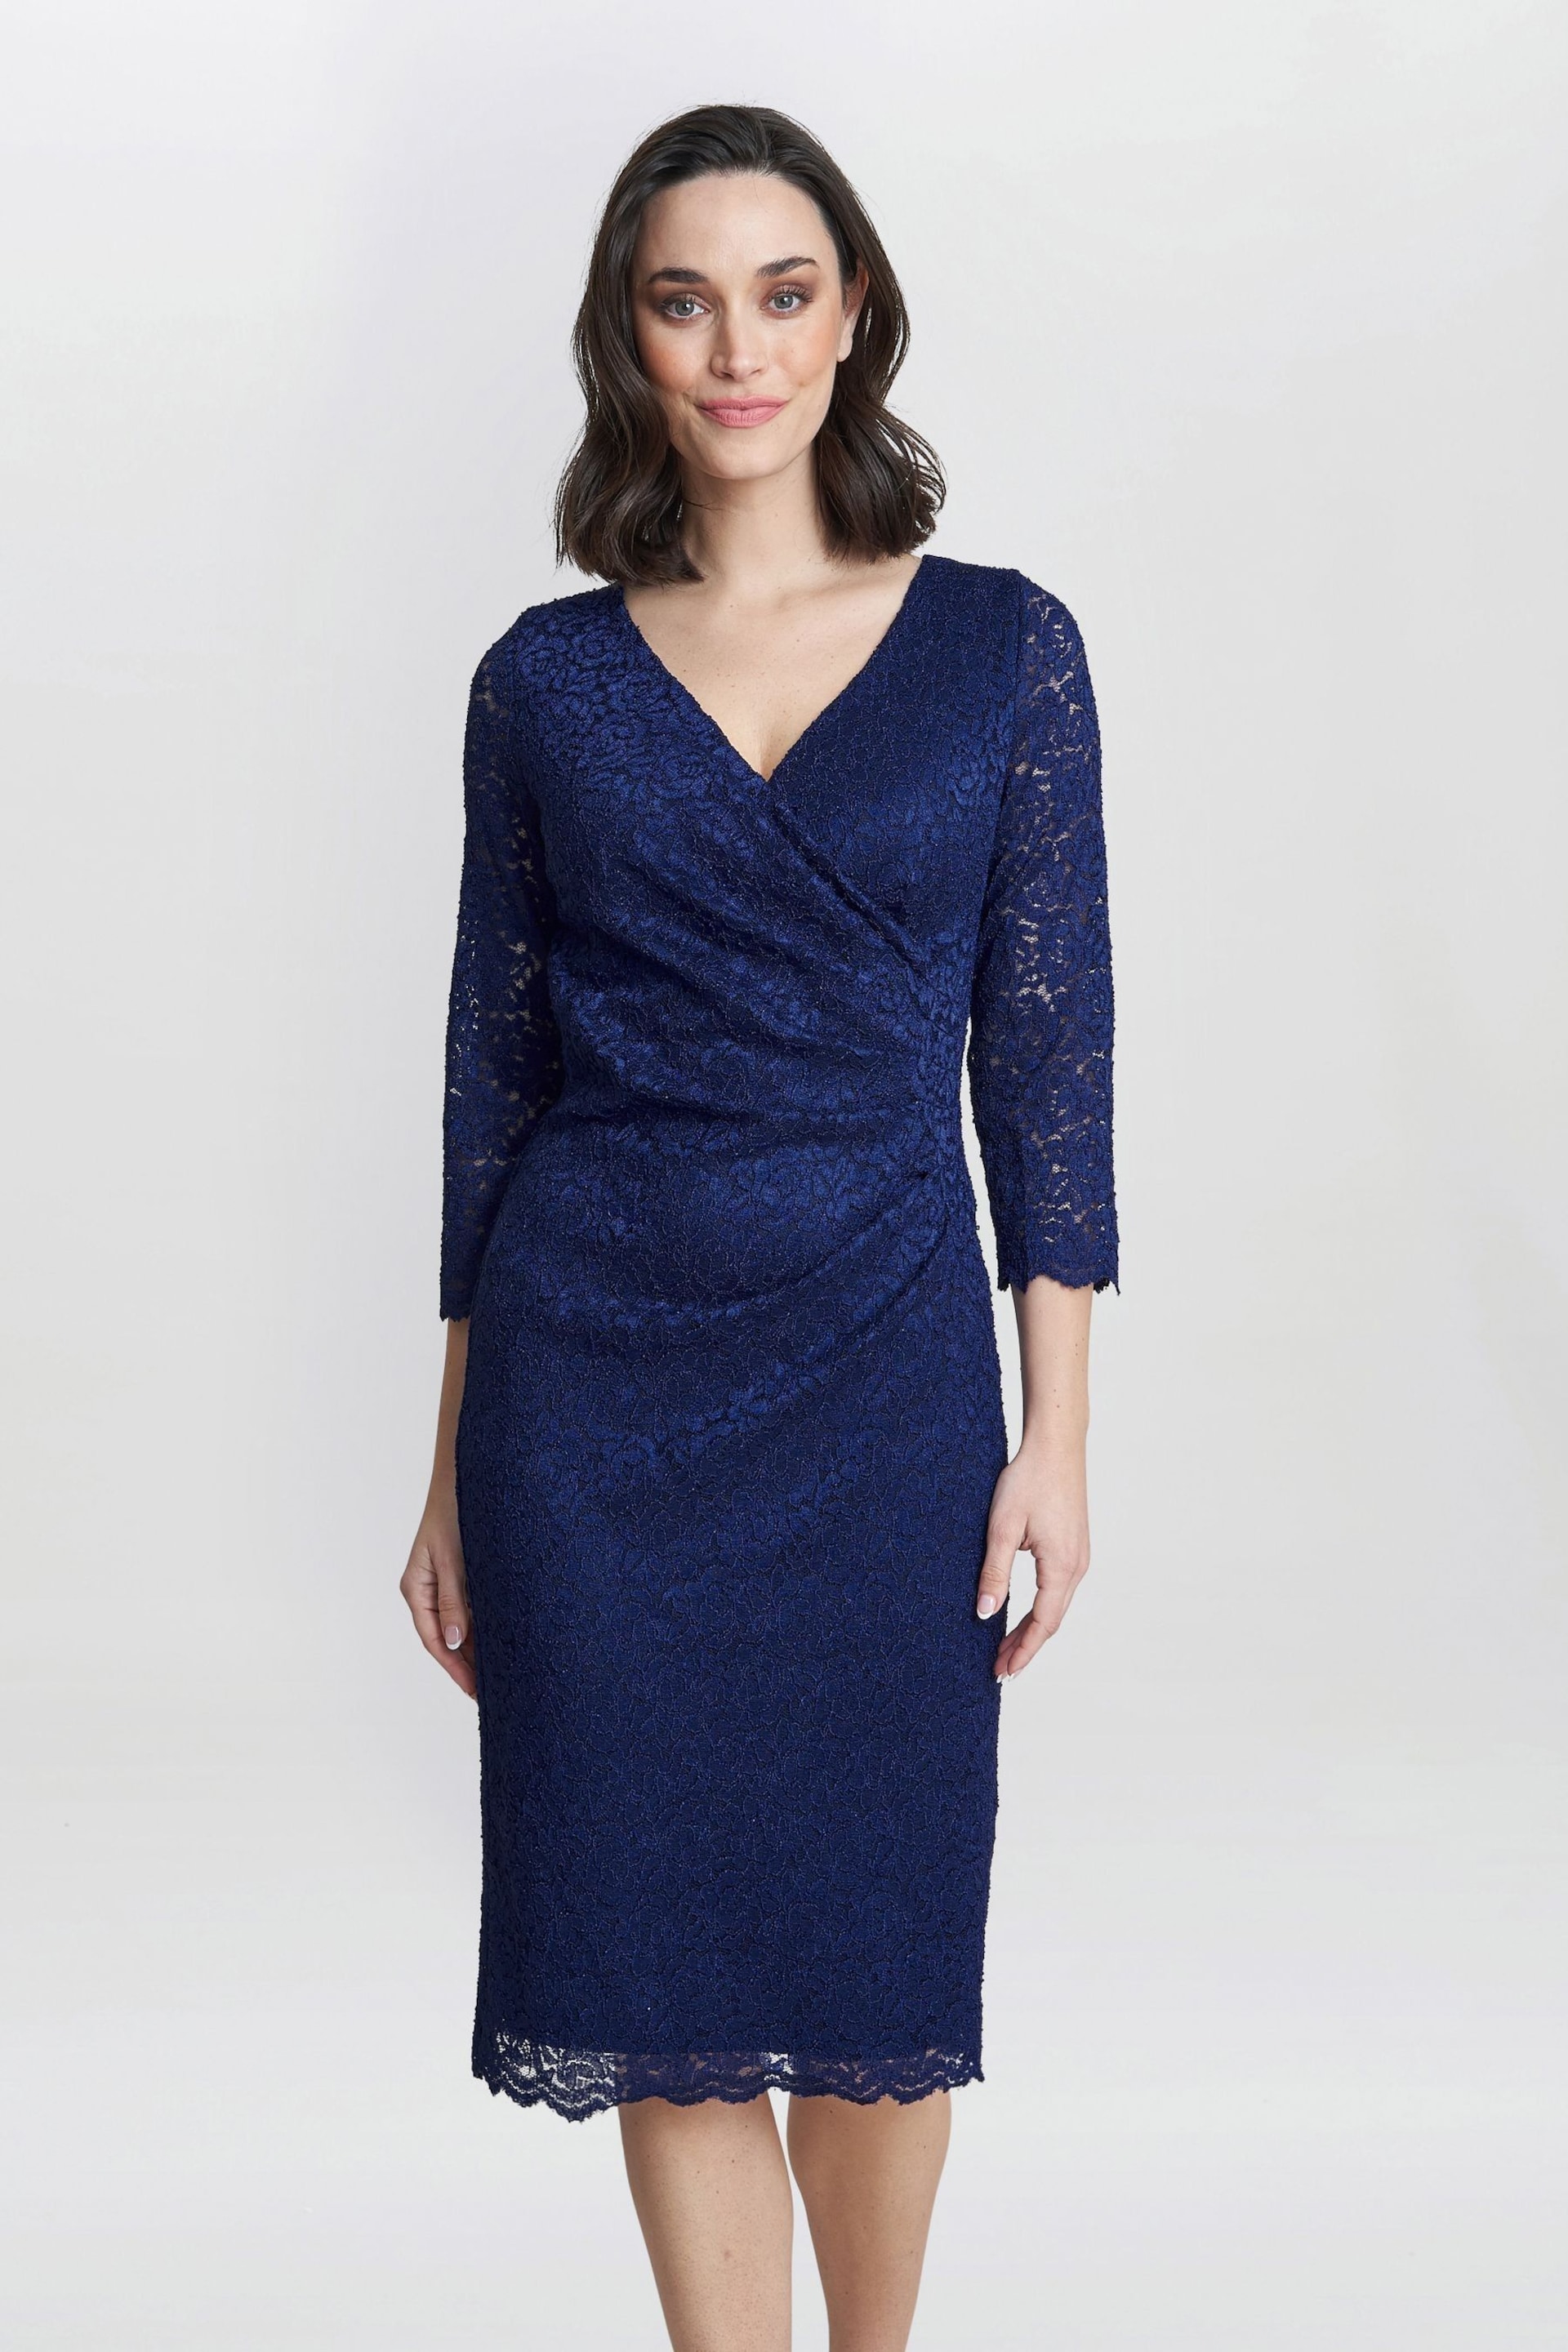 Gina Bacconi Blue Melody Lace Wrap Dress - Image 1 of 5